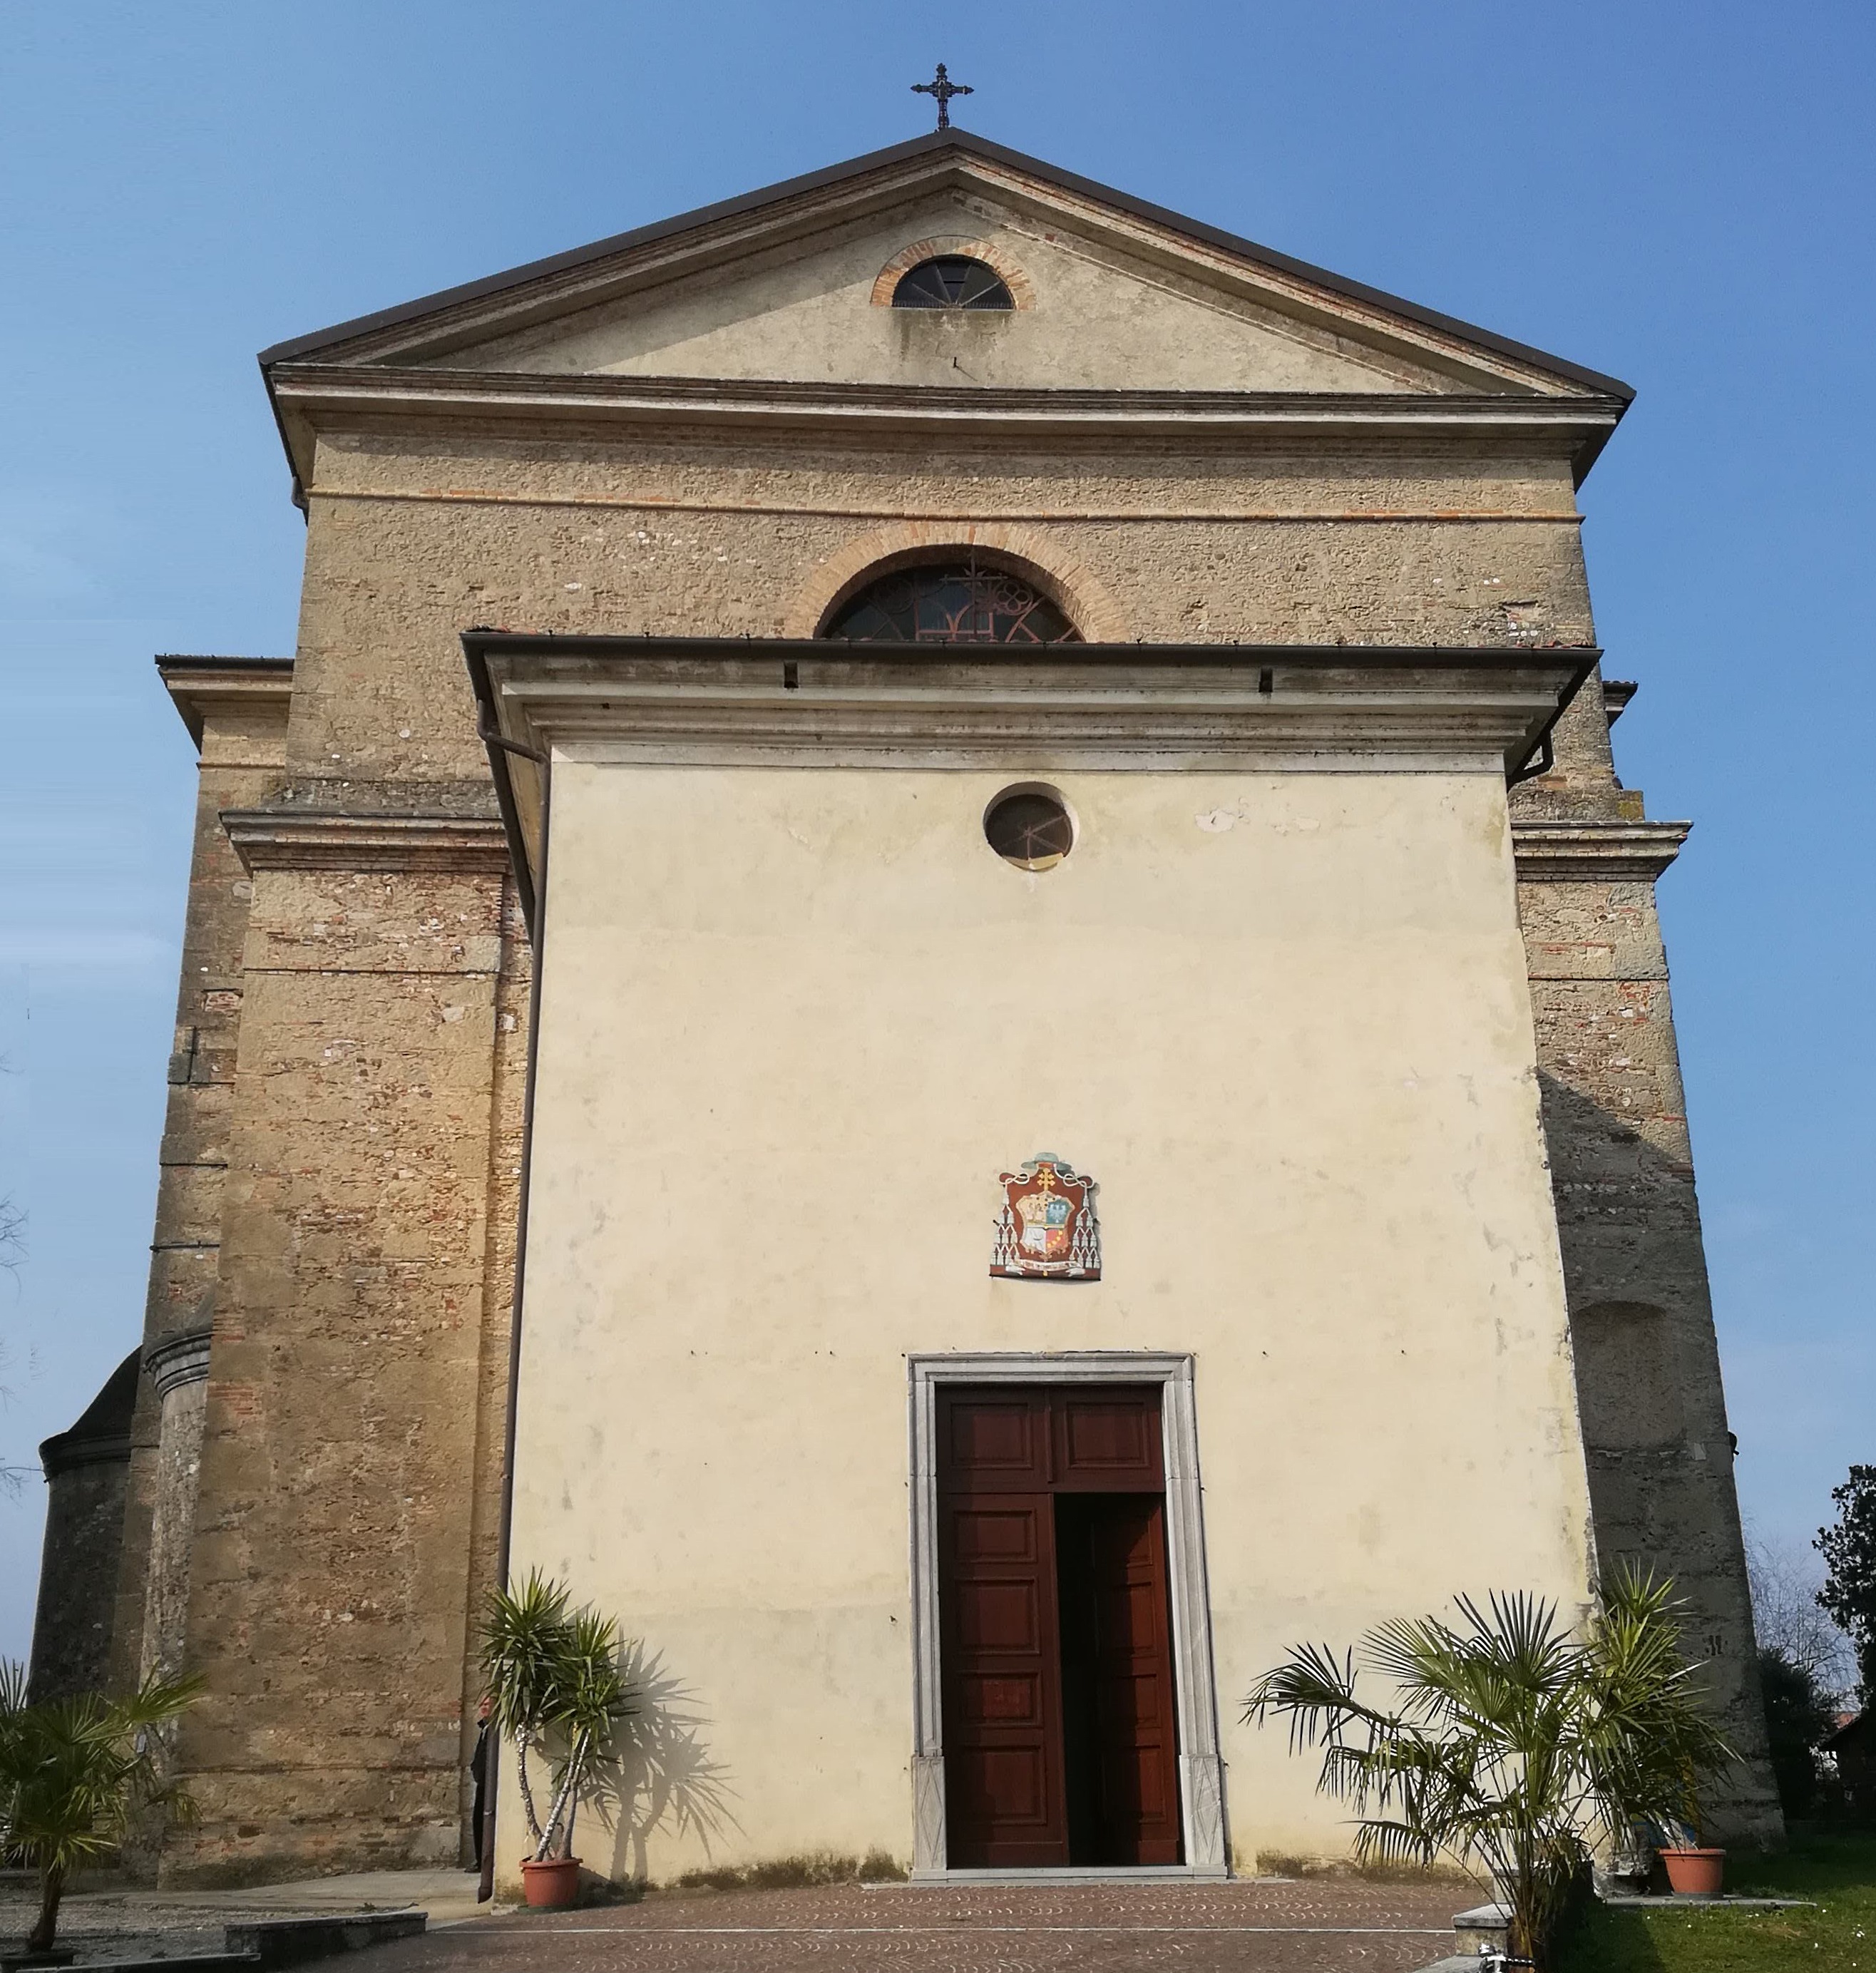 Noleggio estintori a Pozzuolo del Friuli